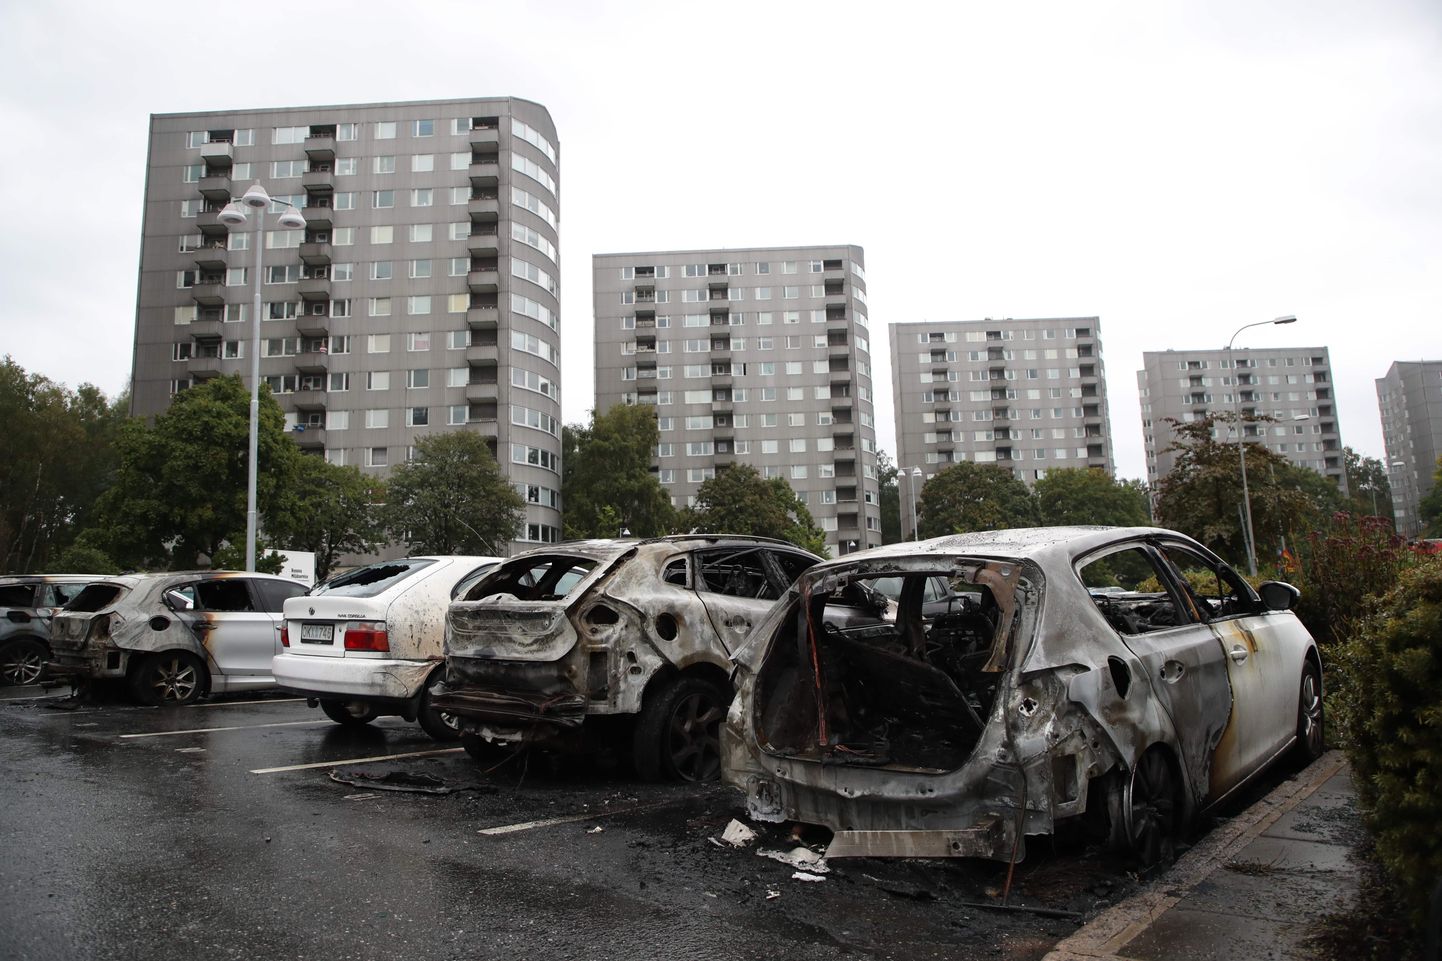 Põlenud autod Rootsis Göteborgis Frölundas